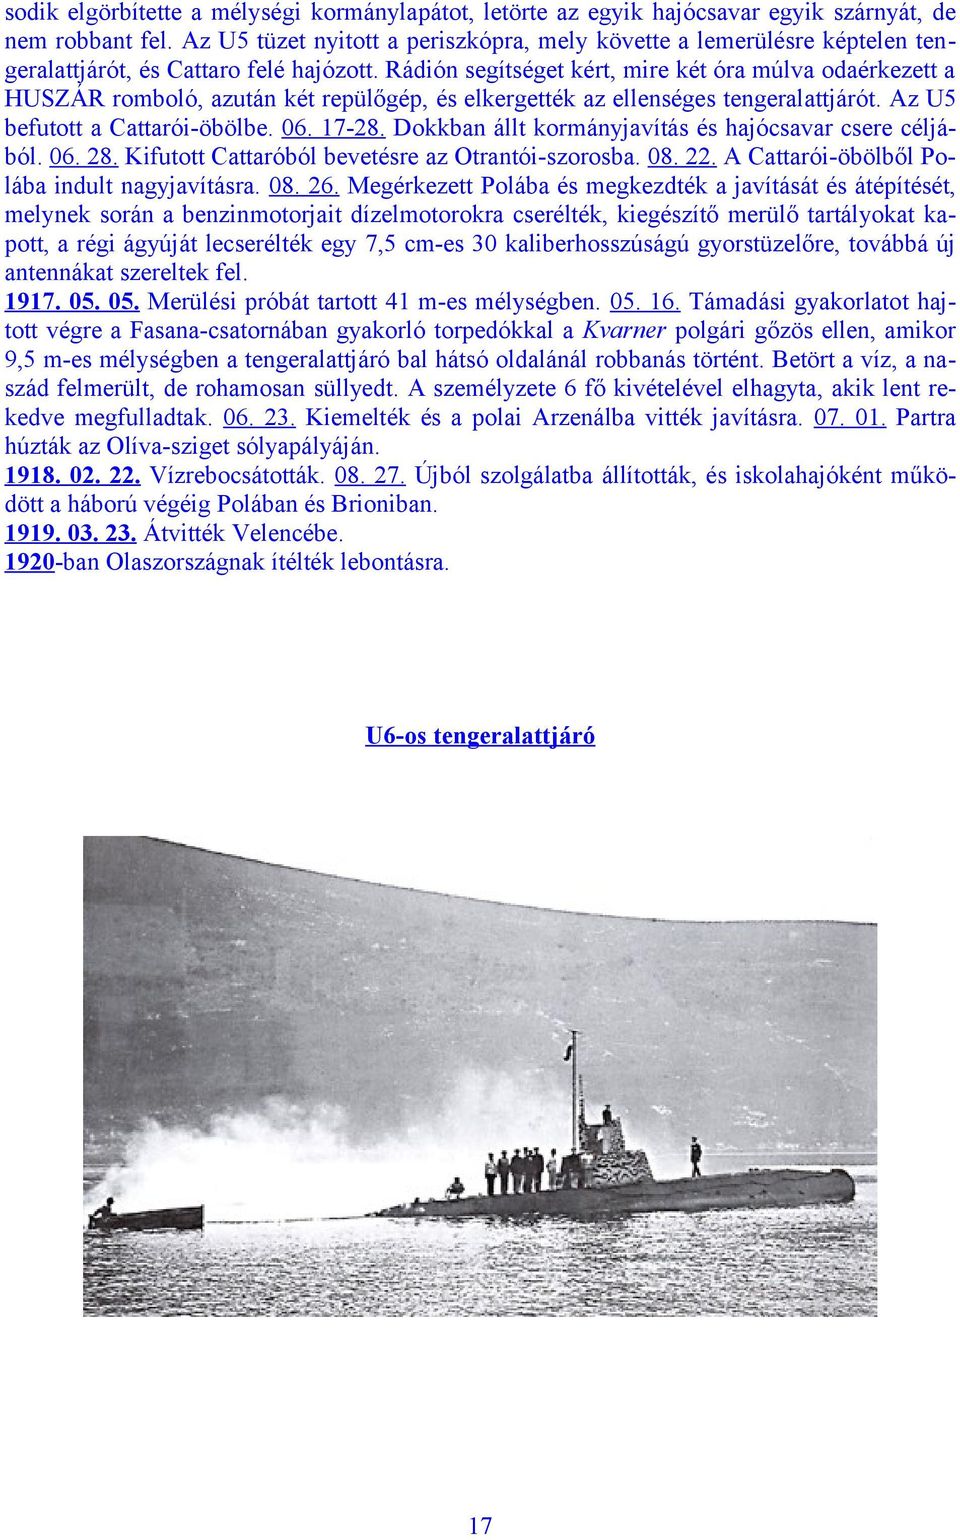 Rádión segítséget kért, mire két óra múlva odaérkezett a HUSZÁR romboló, azután két repülőgép, és elkergették az ellenséges tengeralattjárót. Az U5 befutott a Cattarói-öbölbe. 06. 17-28.